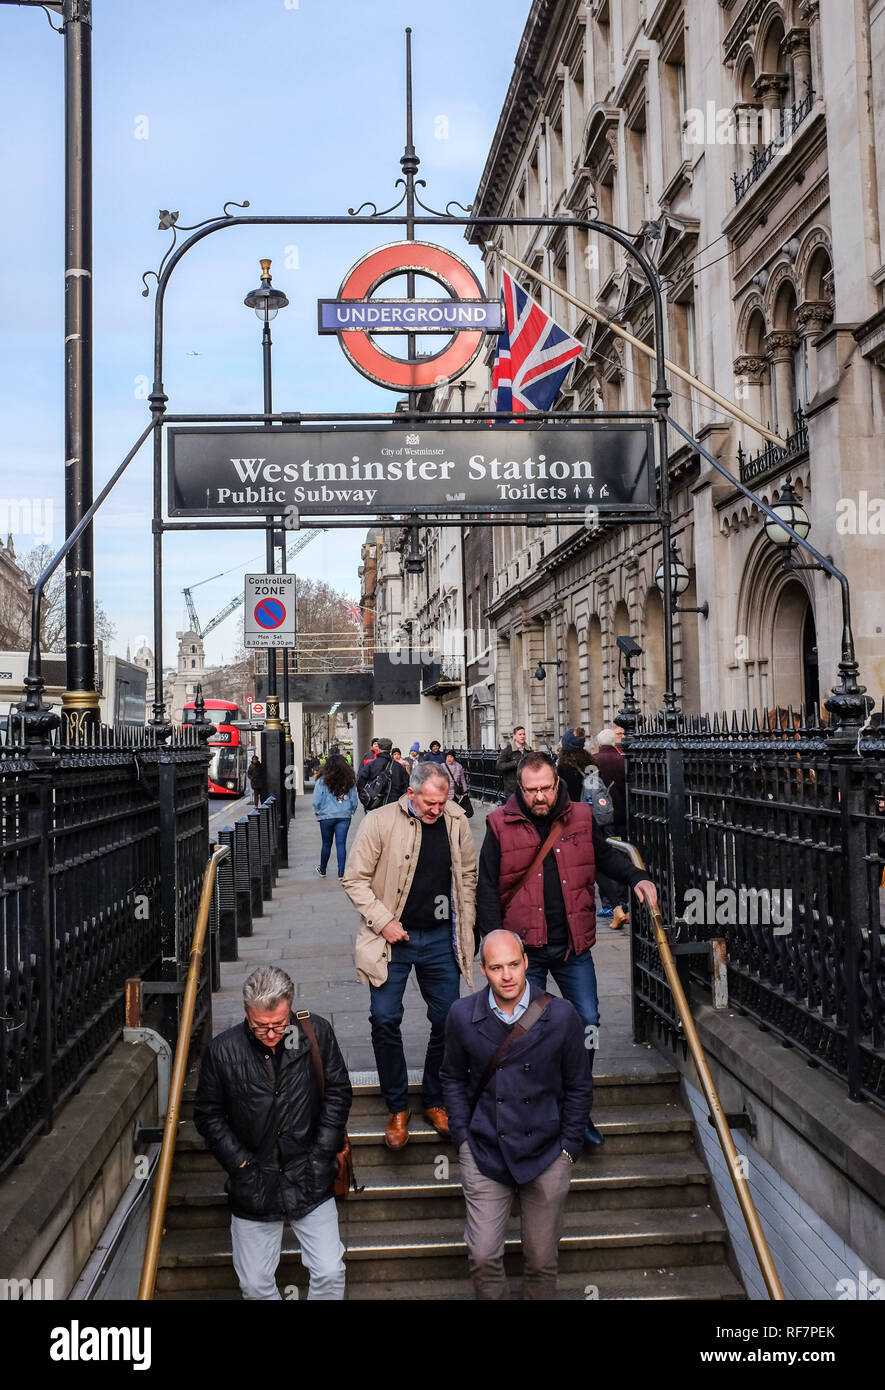 Westminster Underground tube railway station entrance in London UK Stock Photo